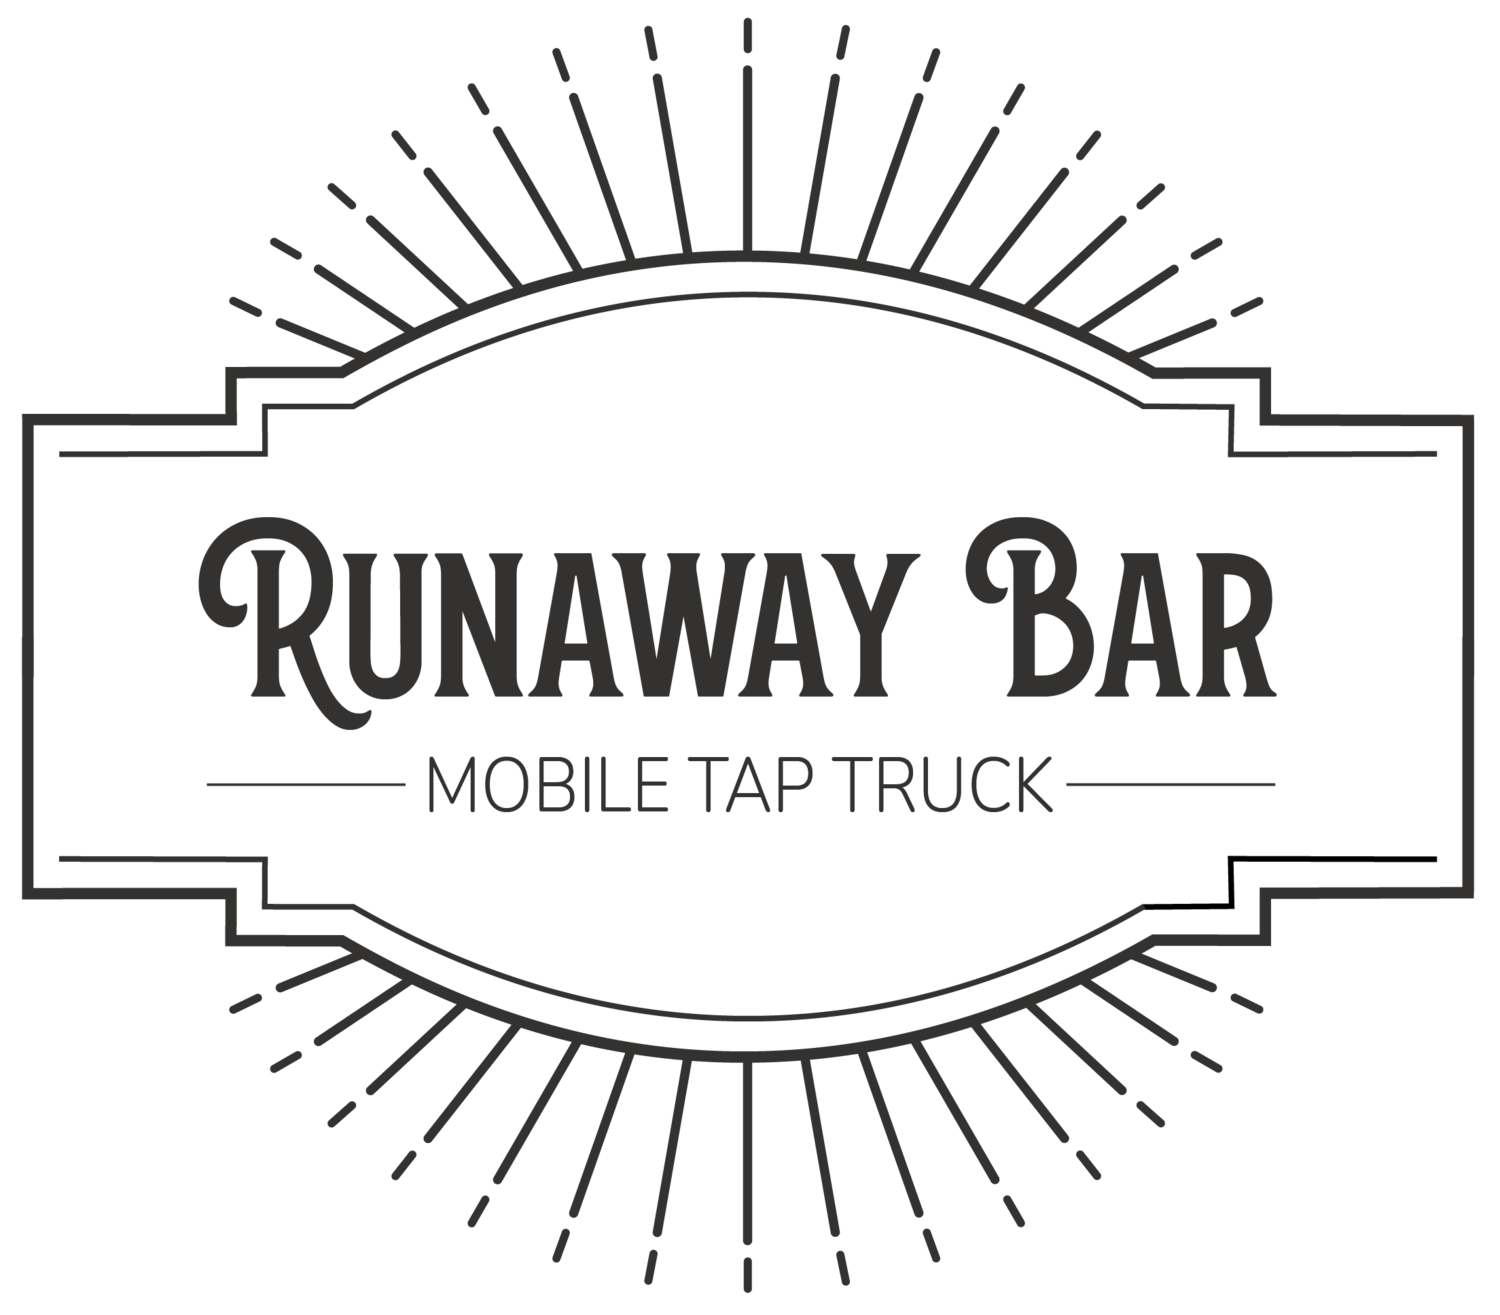 Runaway Bar Mobile Tap Truck